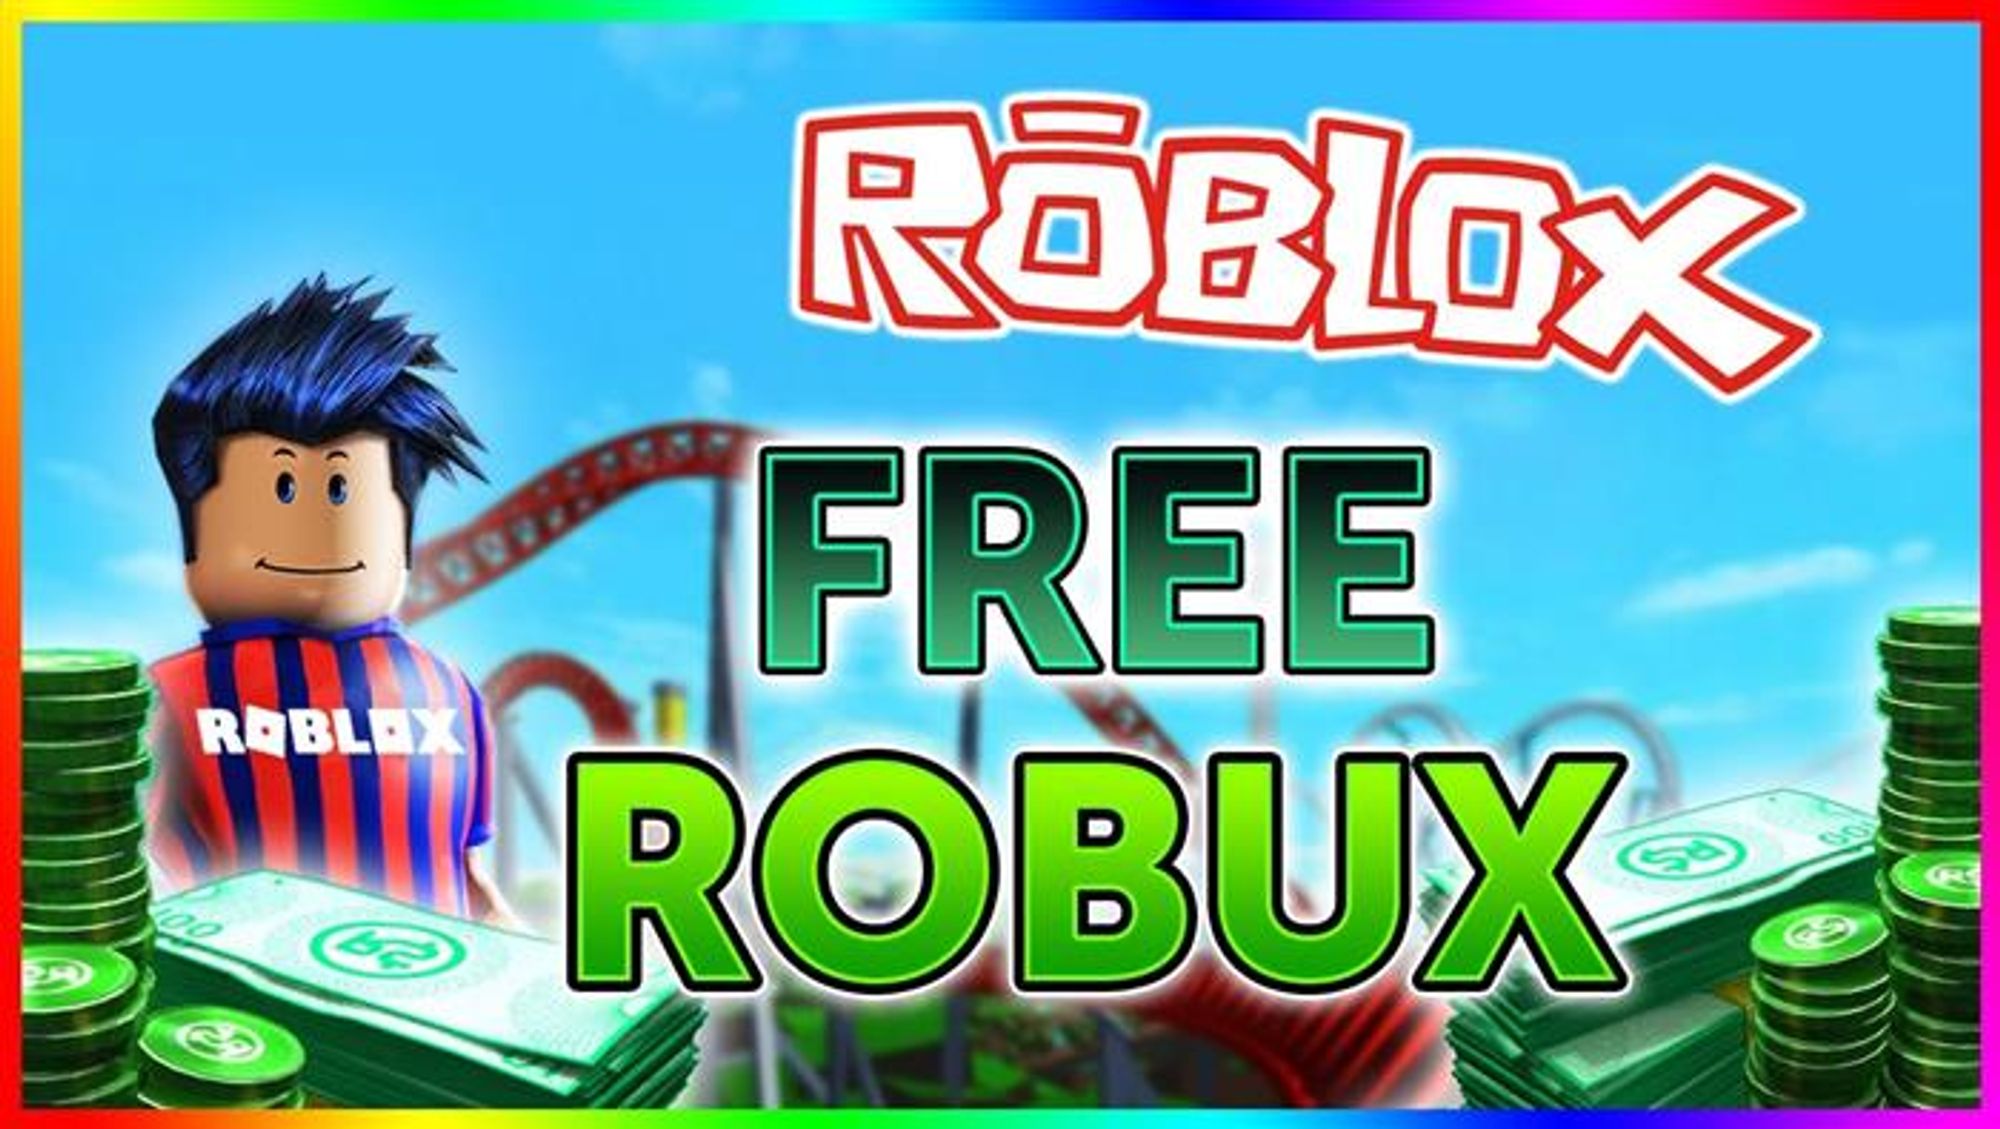 Roblox Hacks 2018 Free Robux